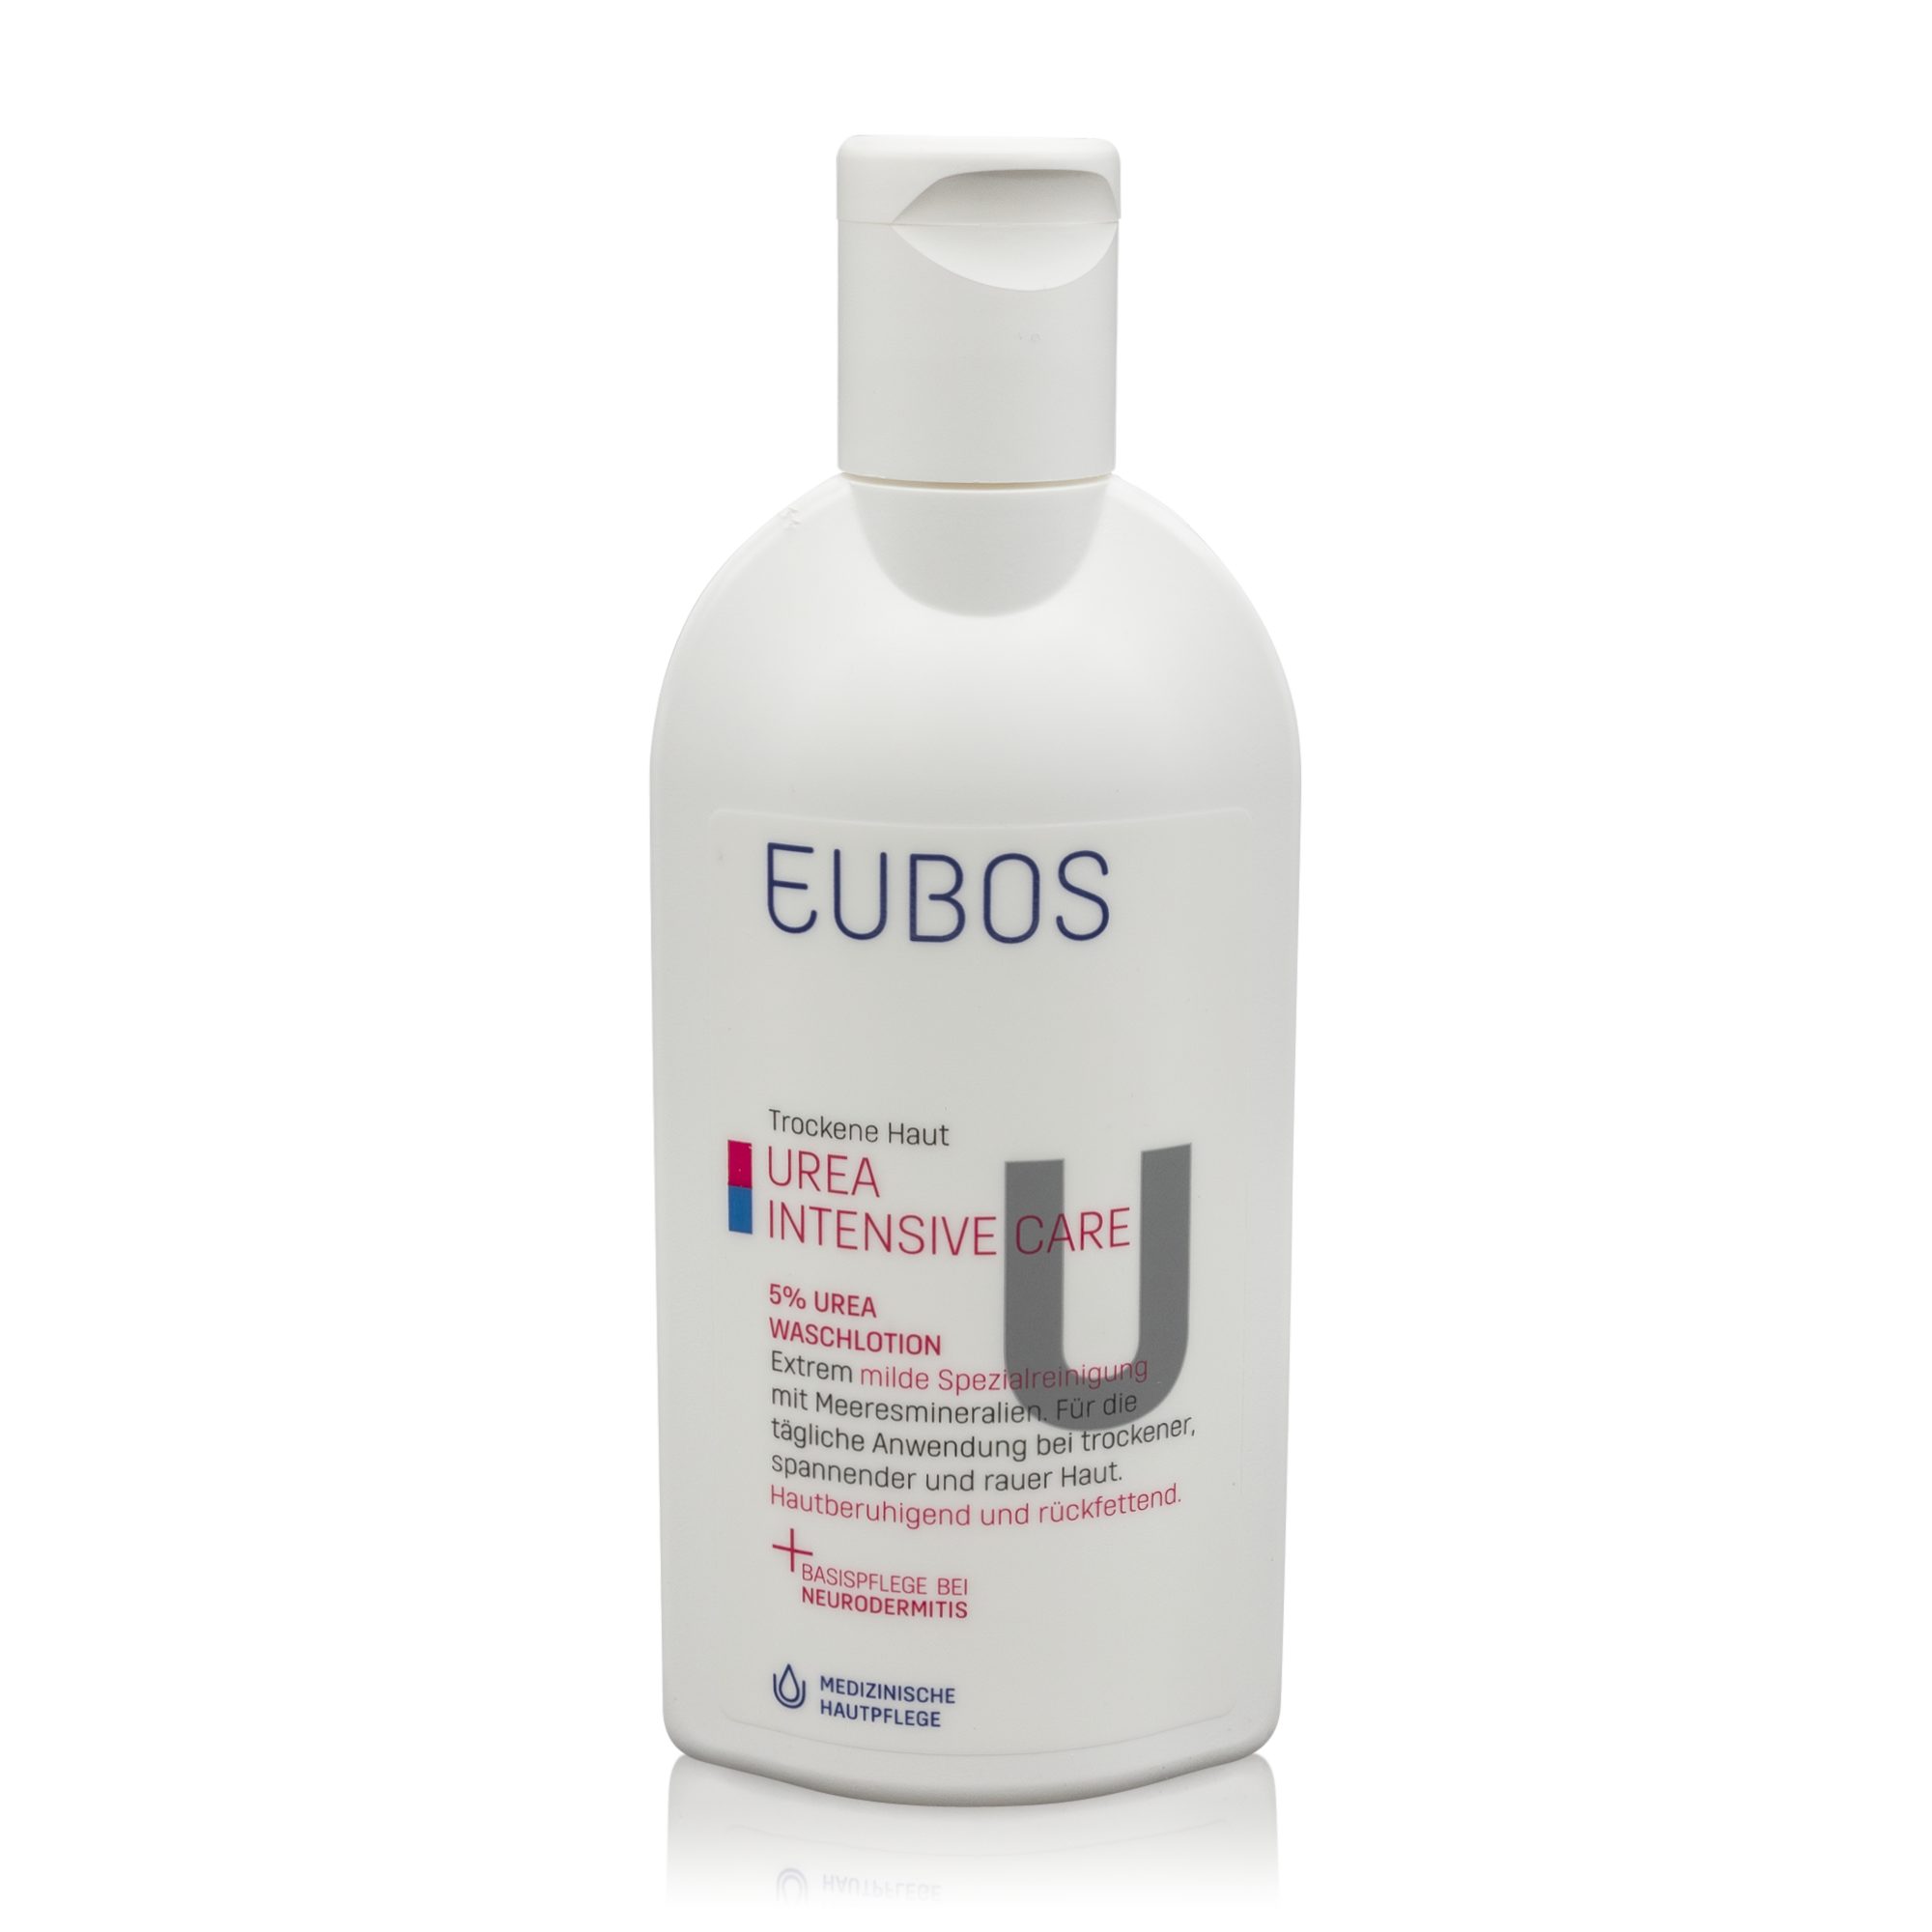 EUBOS Hautreinigungs-Set Eubos Care 5% Haut Trockene (200ml) - Urea Waschlotion Intensive Urea